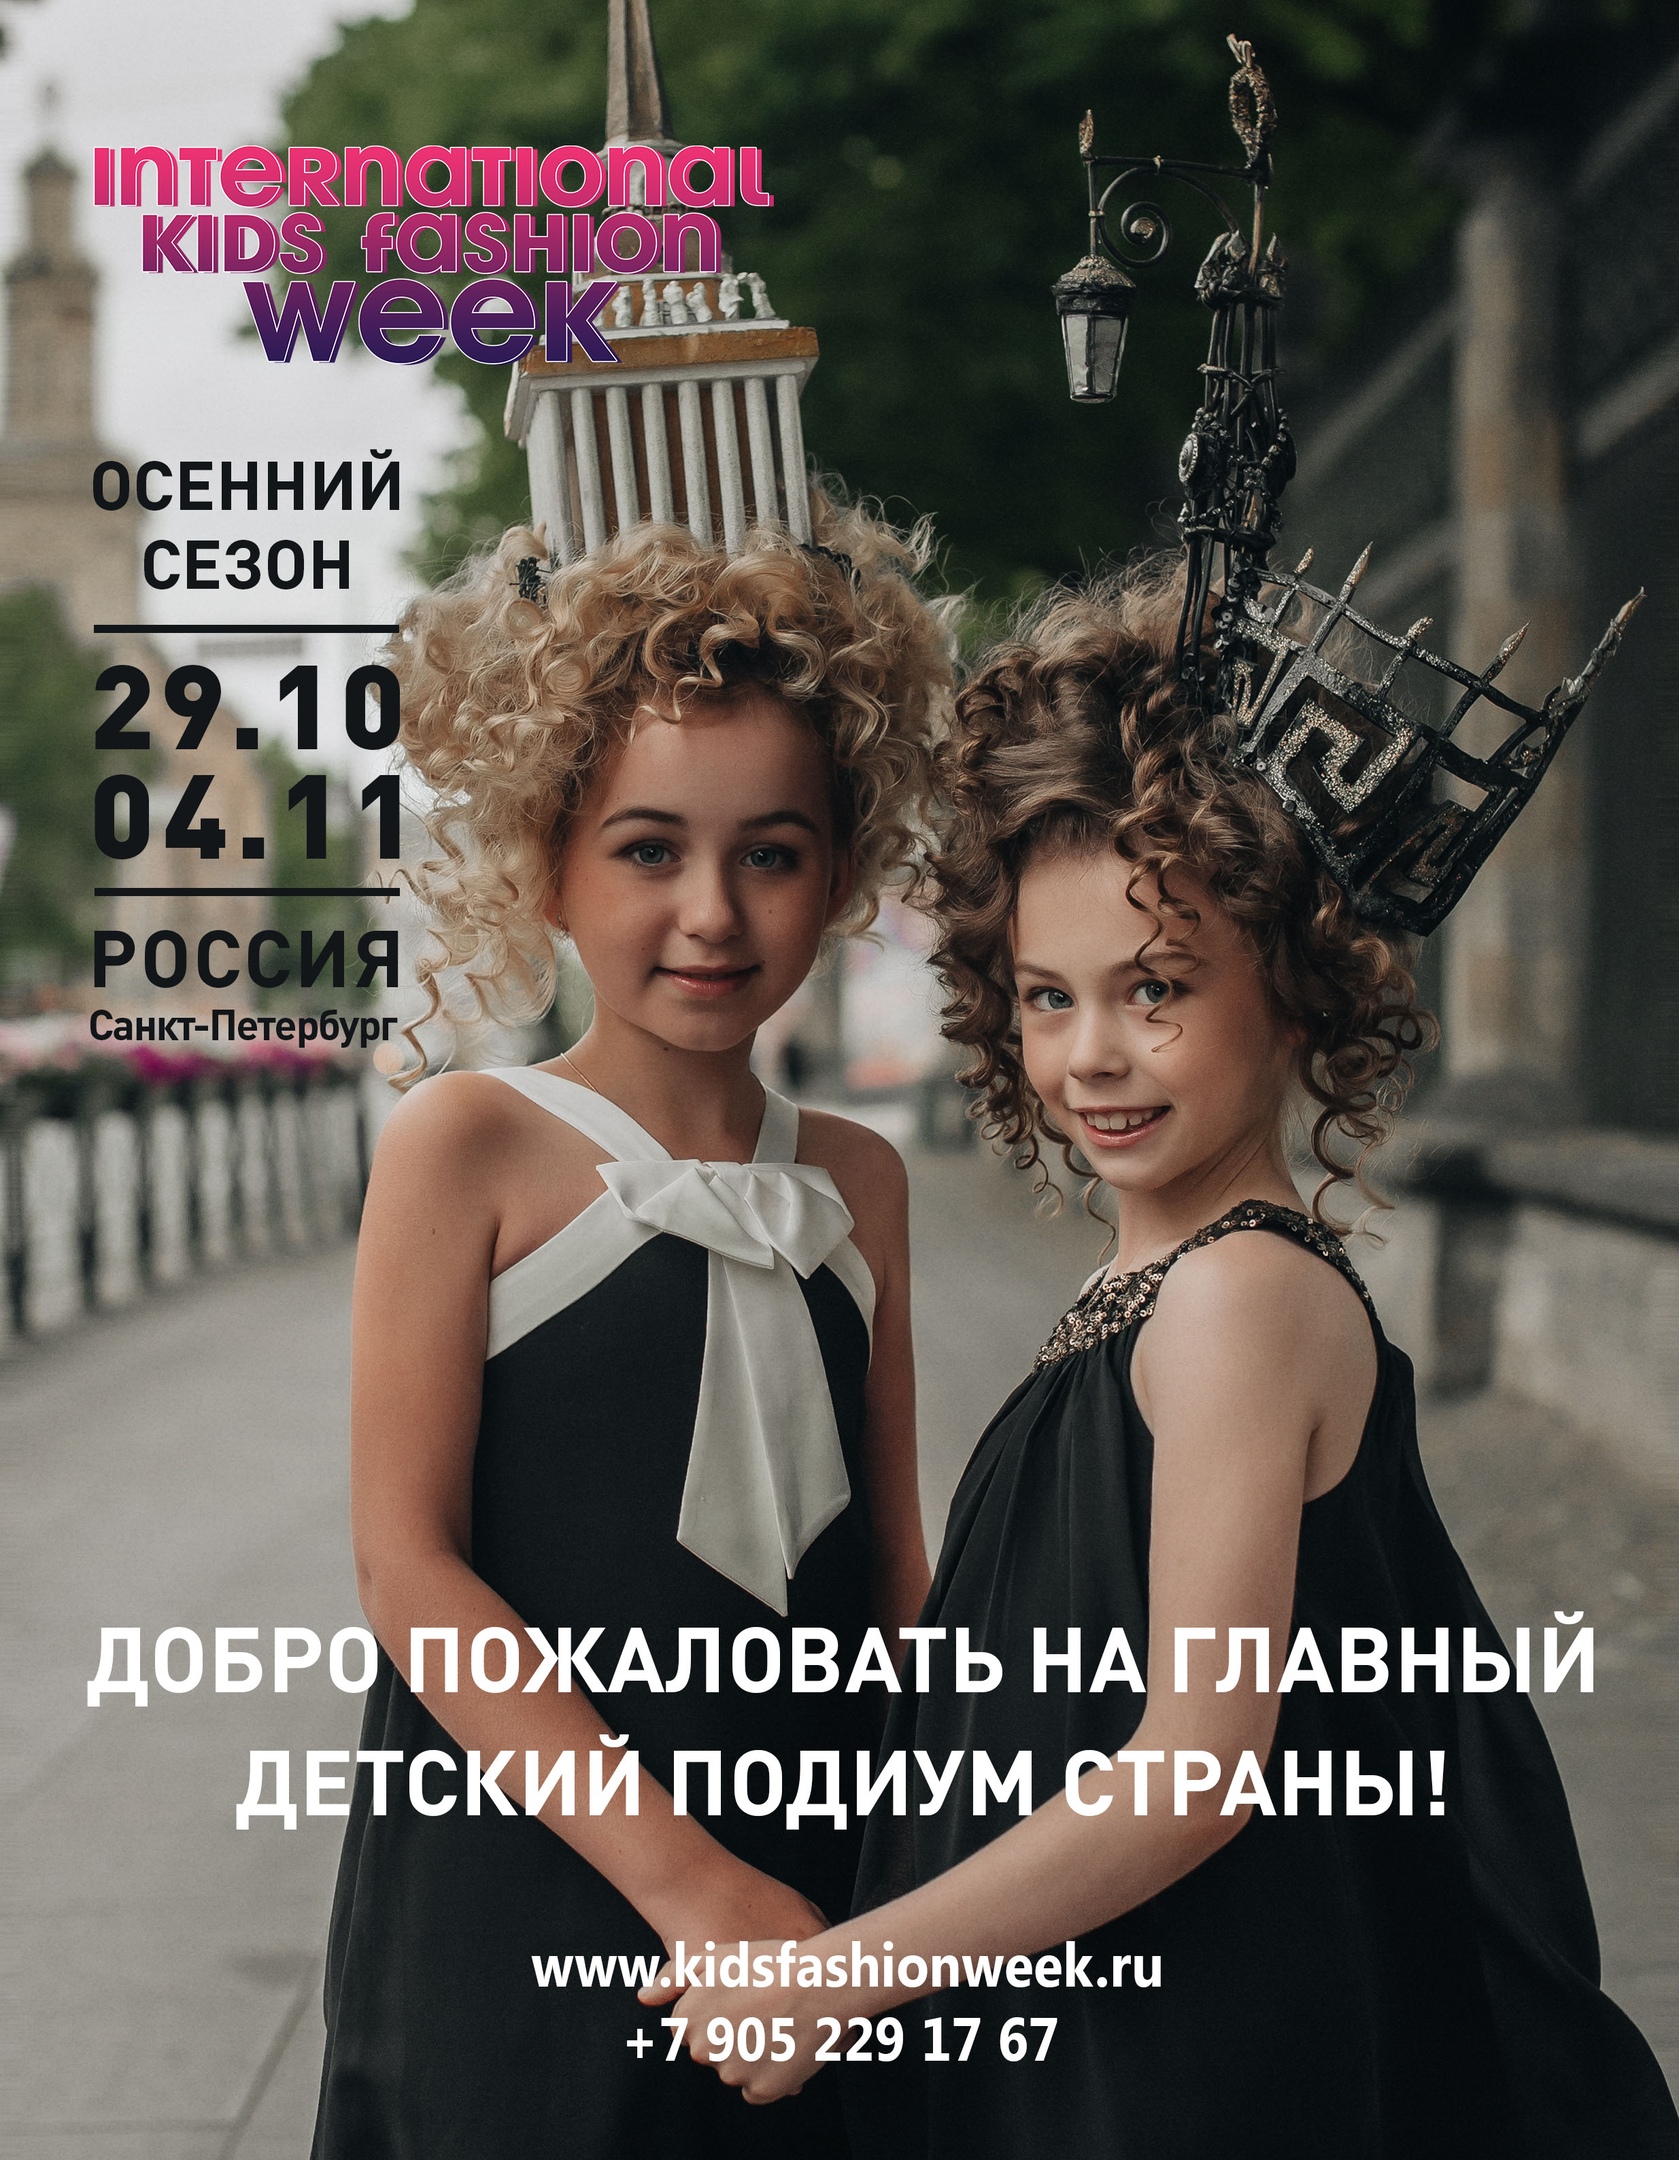 Осенний сезон Международной детской недели моды в Санкт-Петербурге 2018